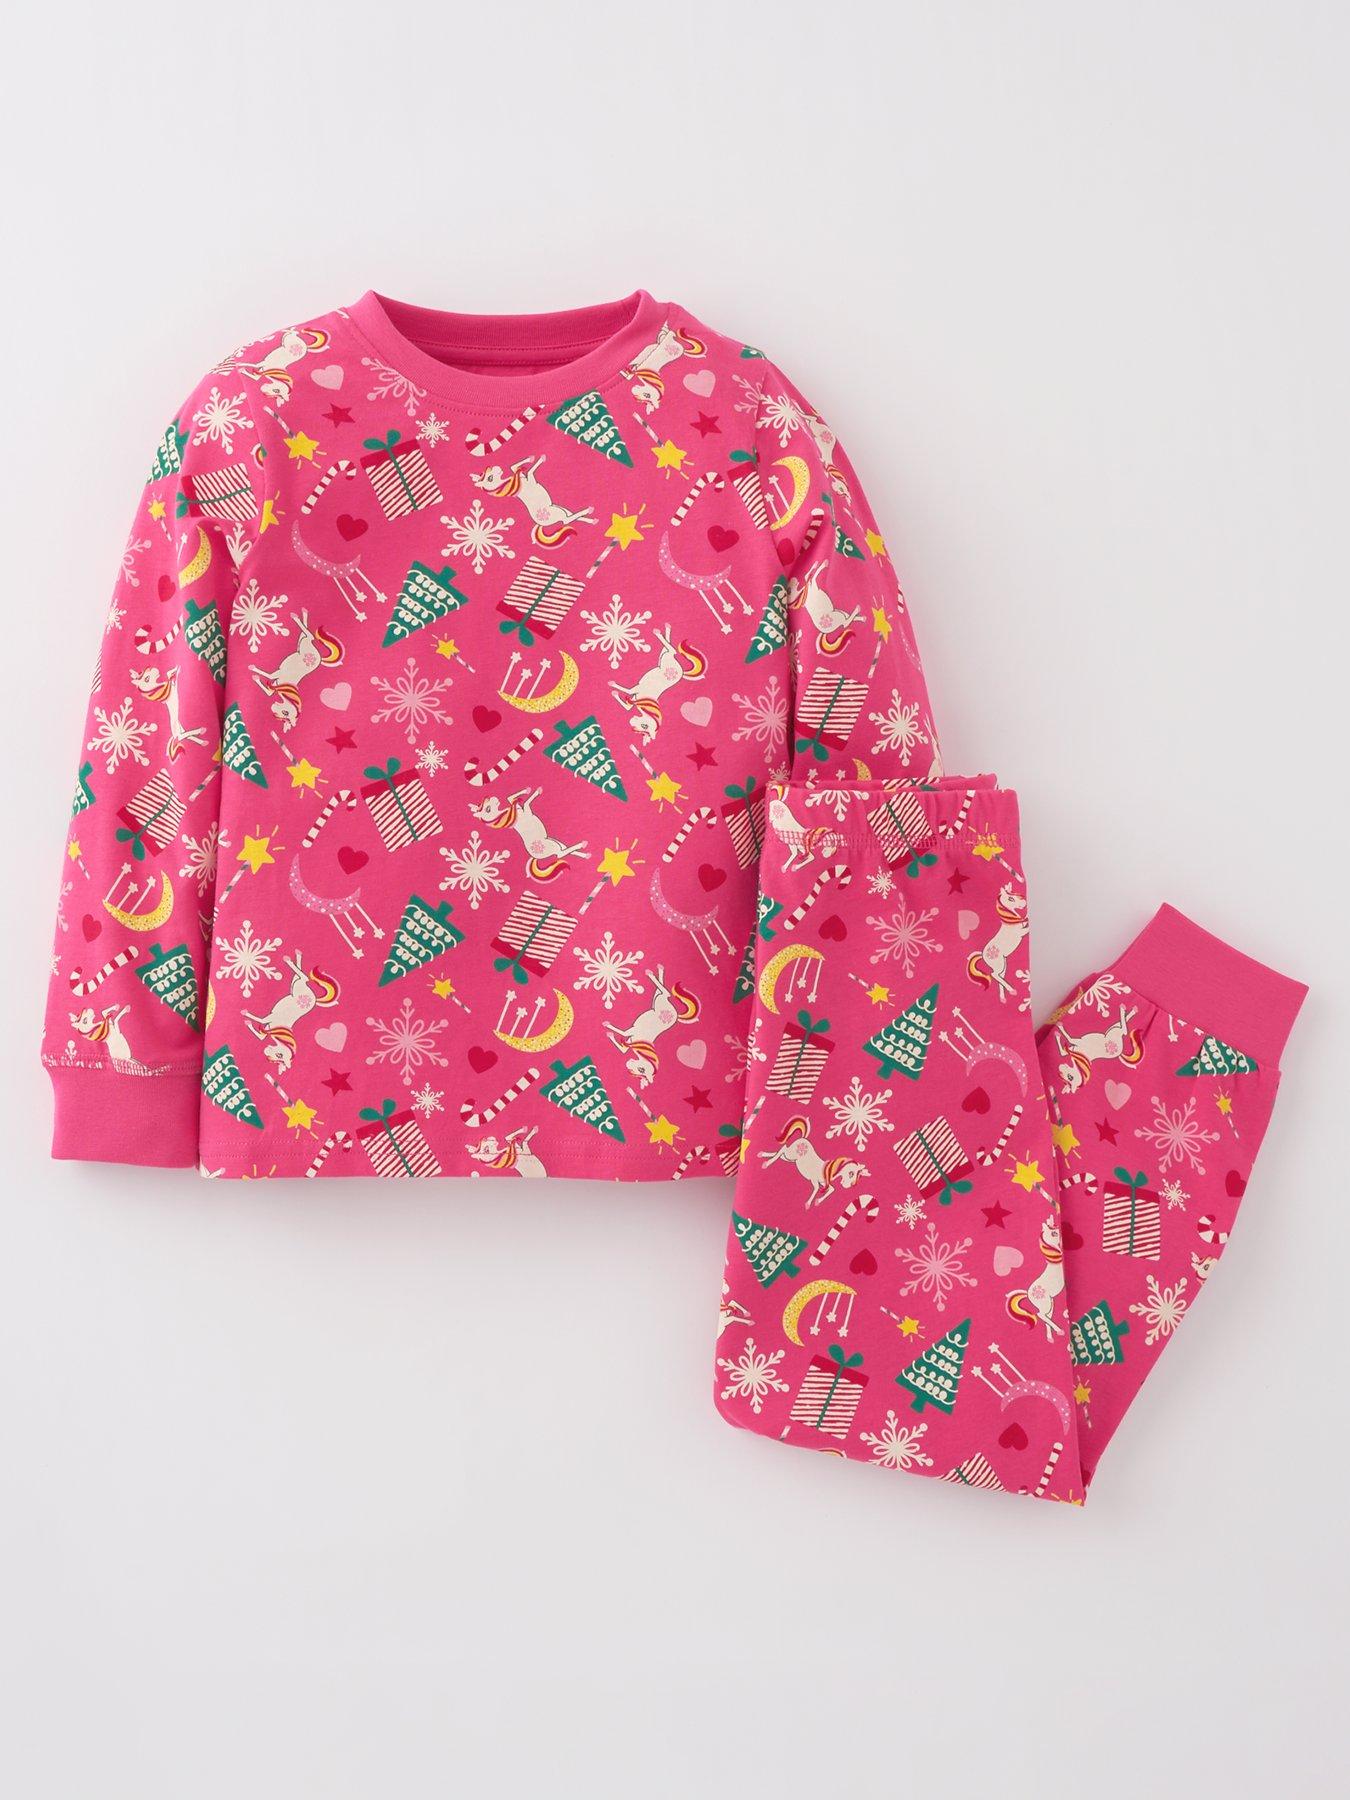 Clothing Unisex Kids Clothing Pyjamas & Robes Pyjamas 2 Piece Girls Set Toddler Long John Set Cotton Baby Set in Floral Baby Loungewear Shirt and Pants 